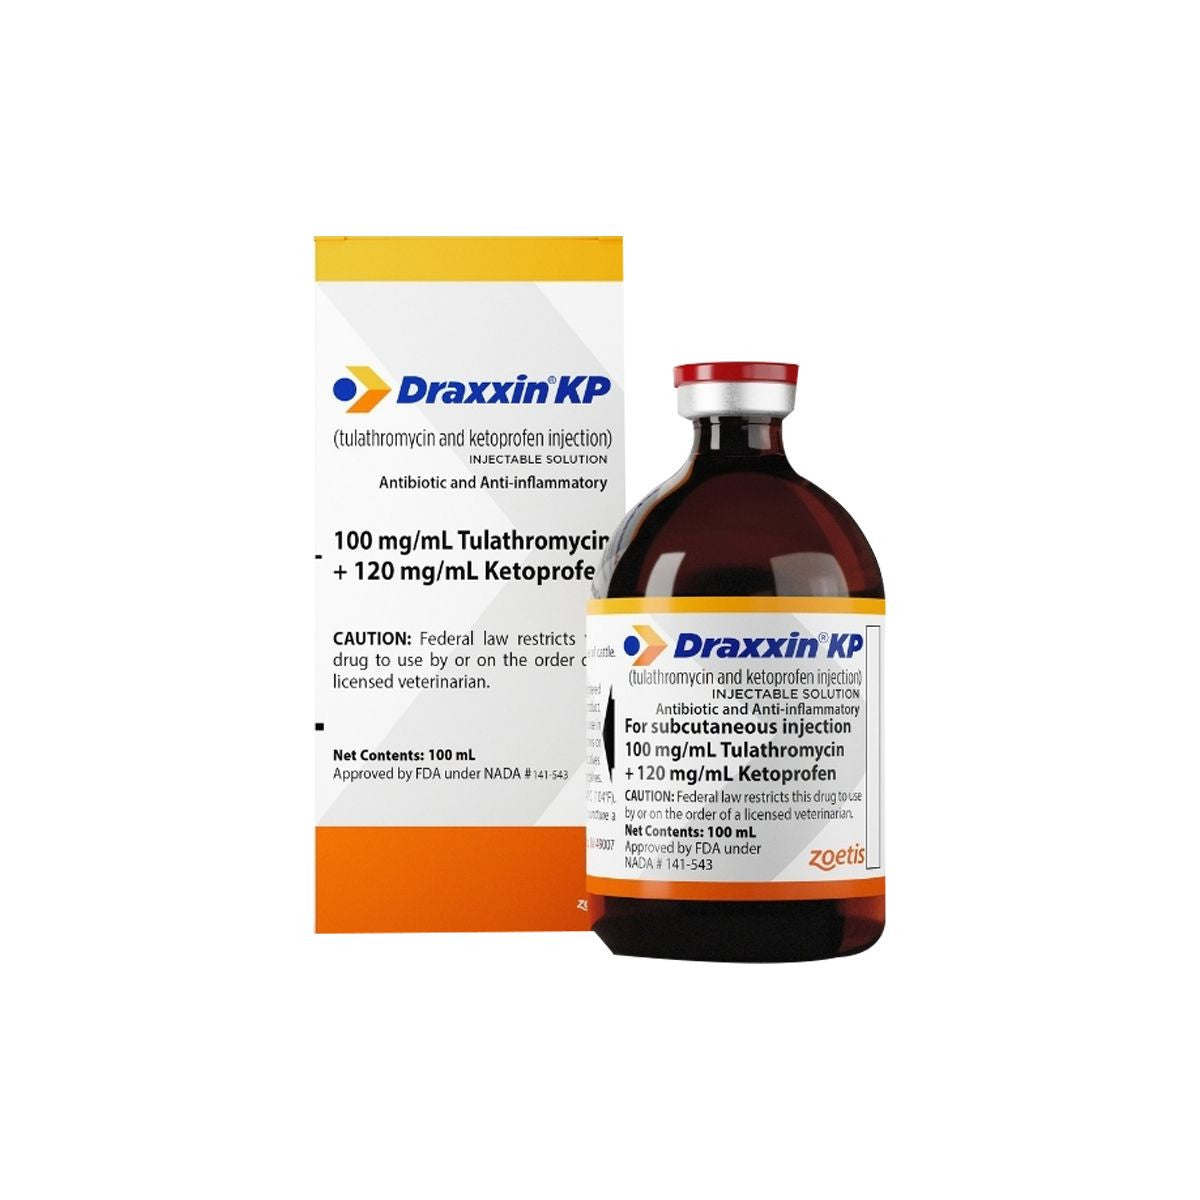 Draxxin KP - Prescription Required